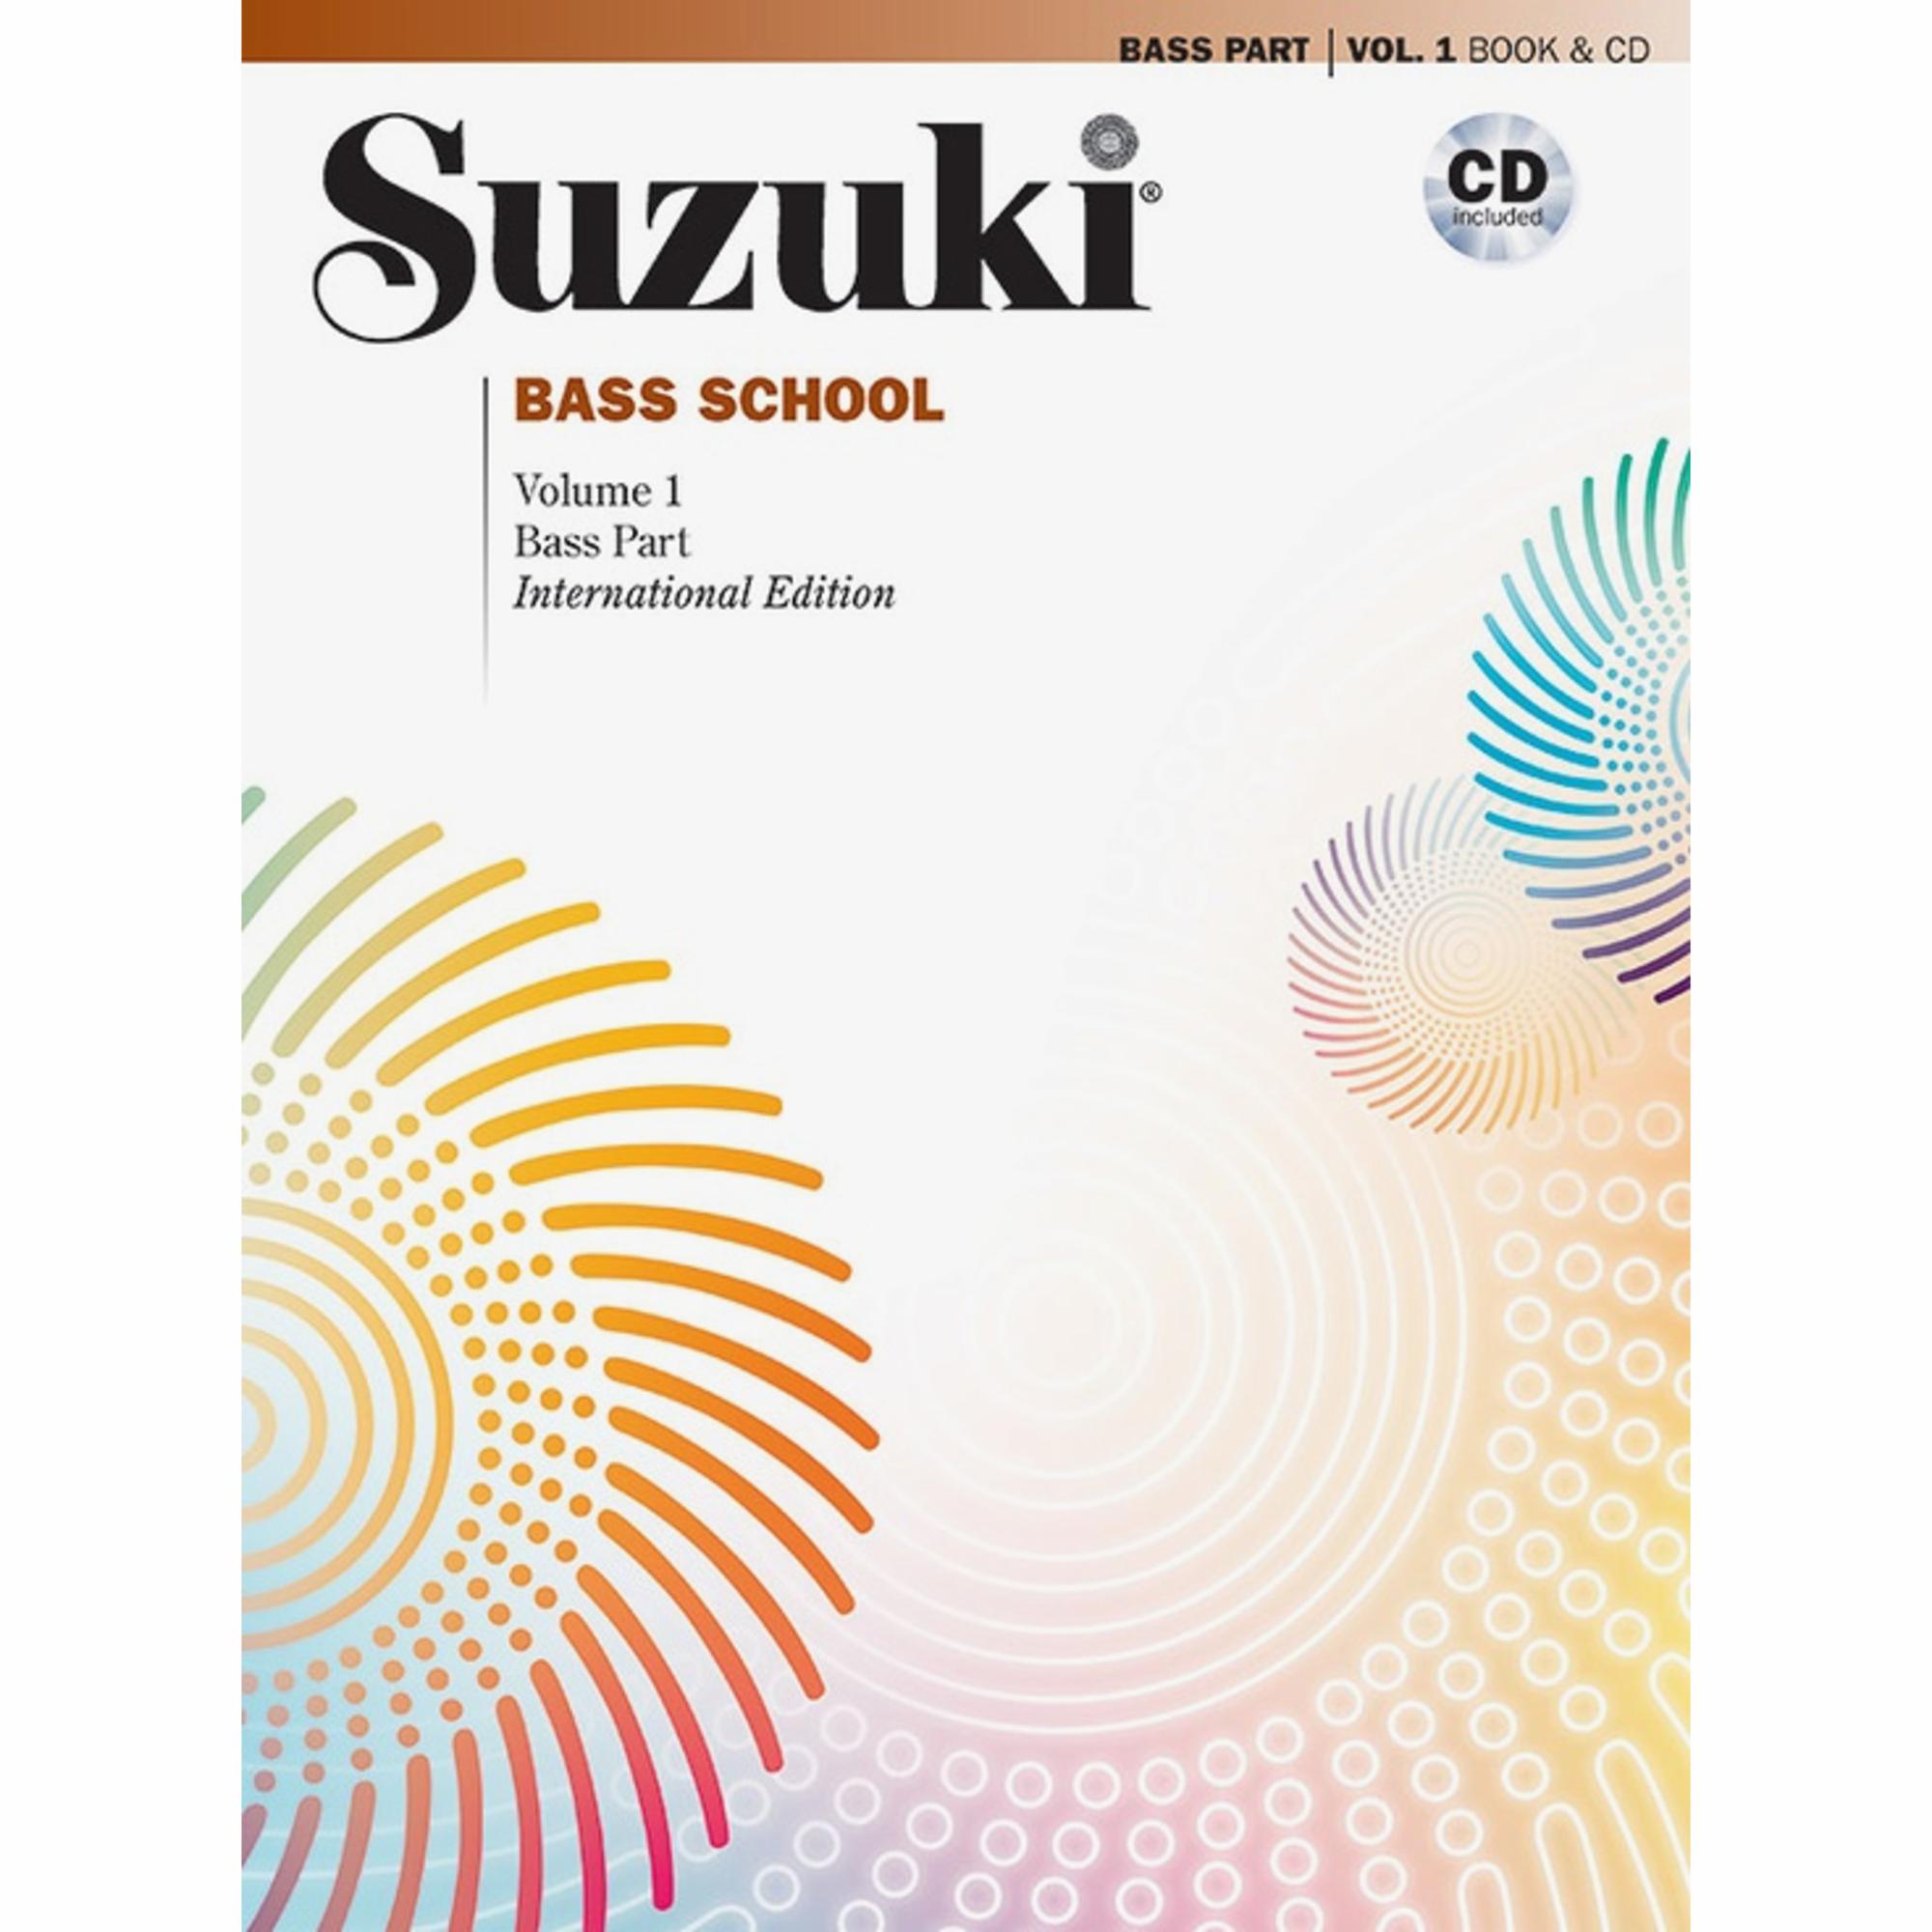 Suzuki Bass School: Bass Part and CD Combo Packs